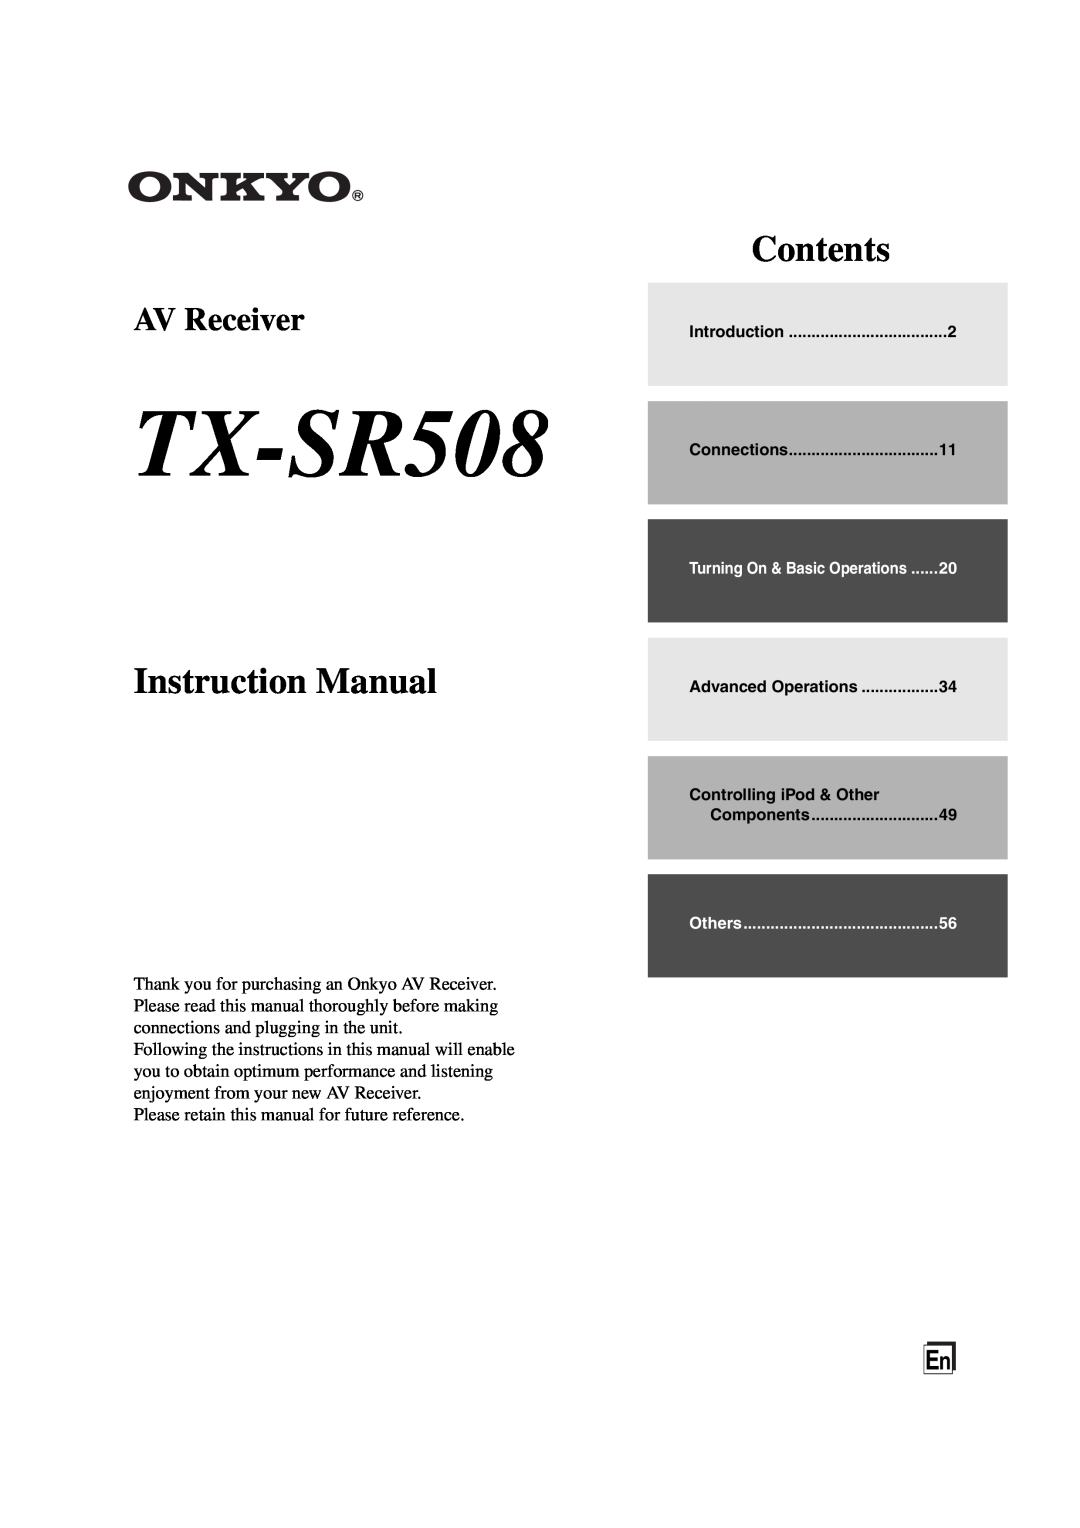 Onkyo TX-SR508 instruction manual Contents, AV Receiver 